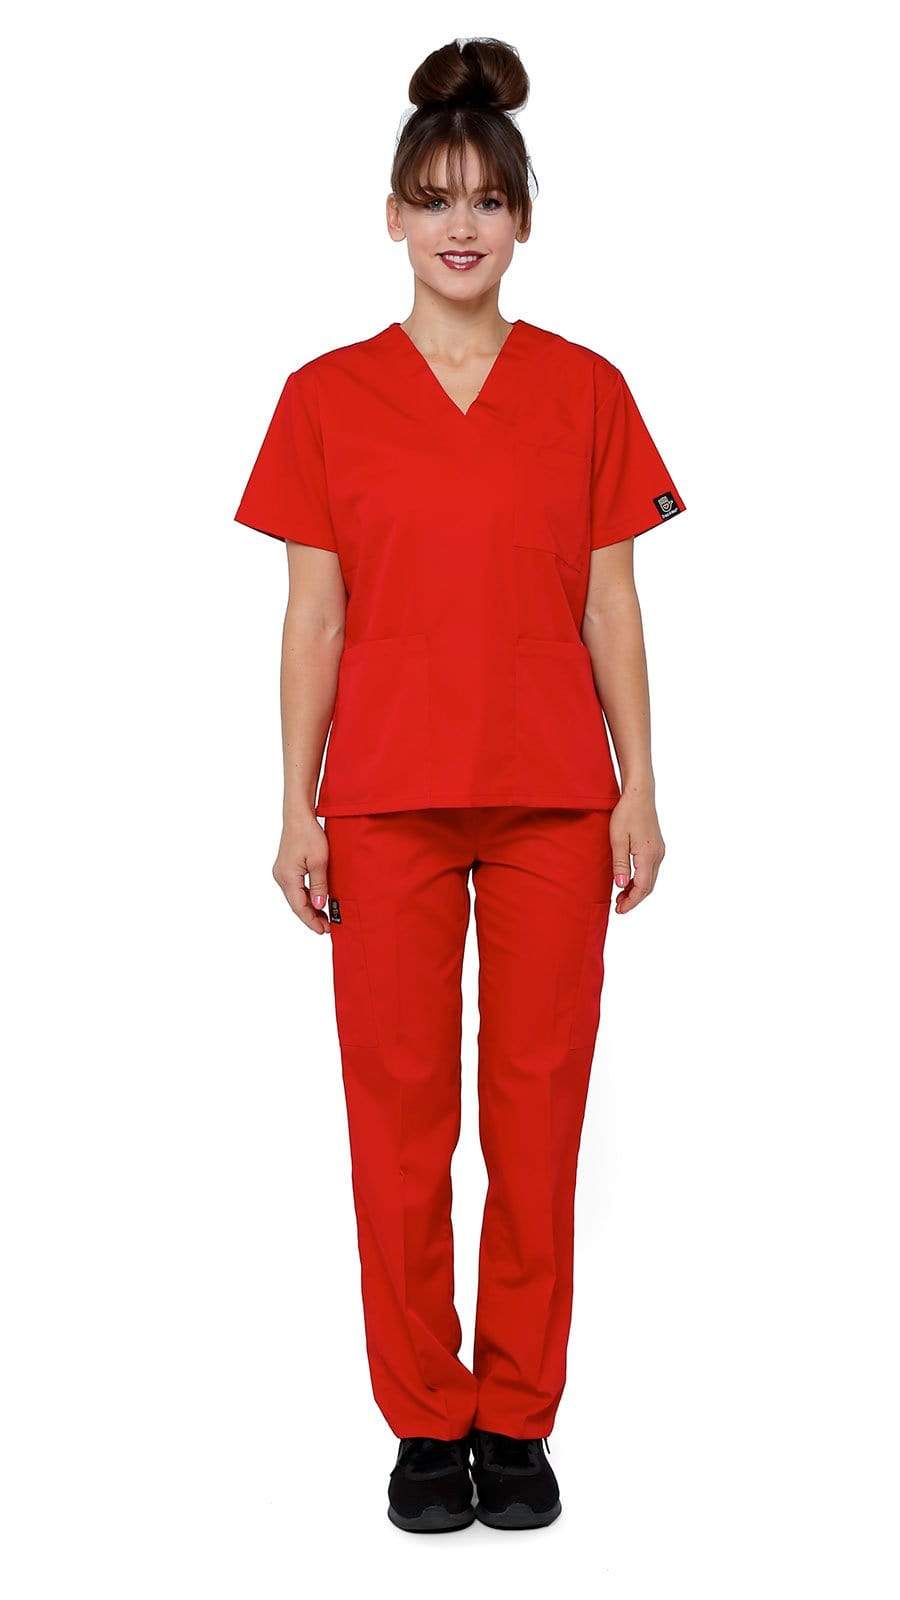 Women's Classic Basic Uniform Scrubs | Dress A Med